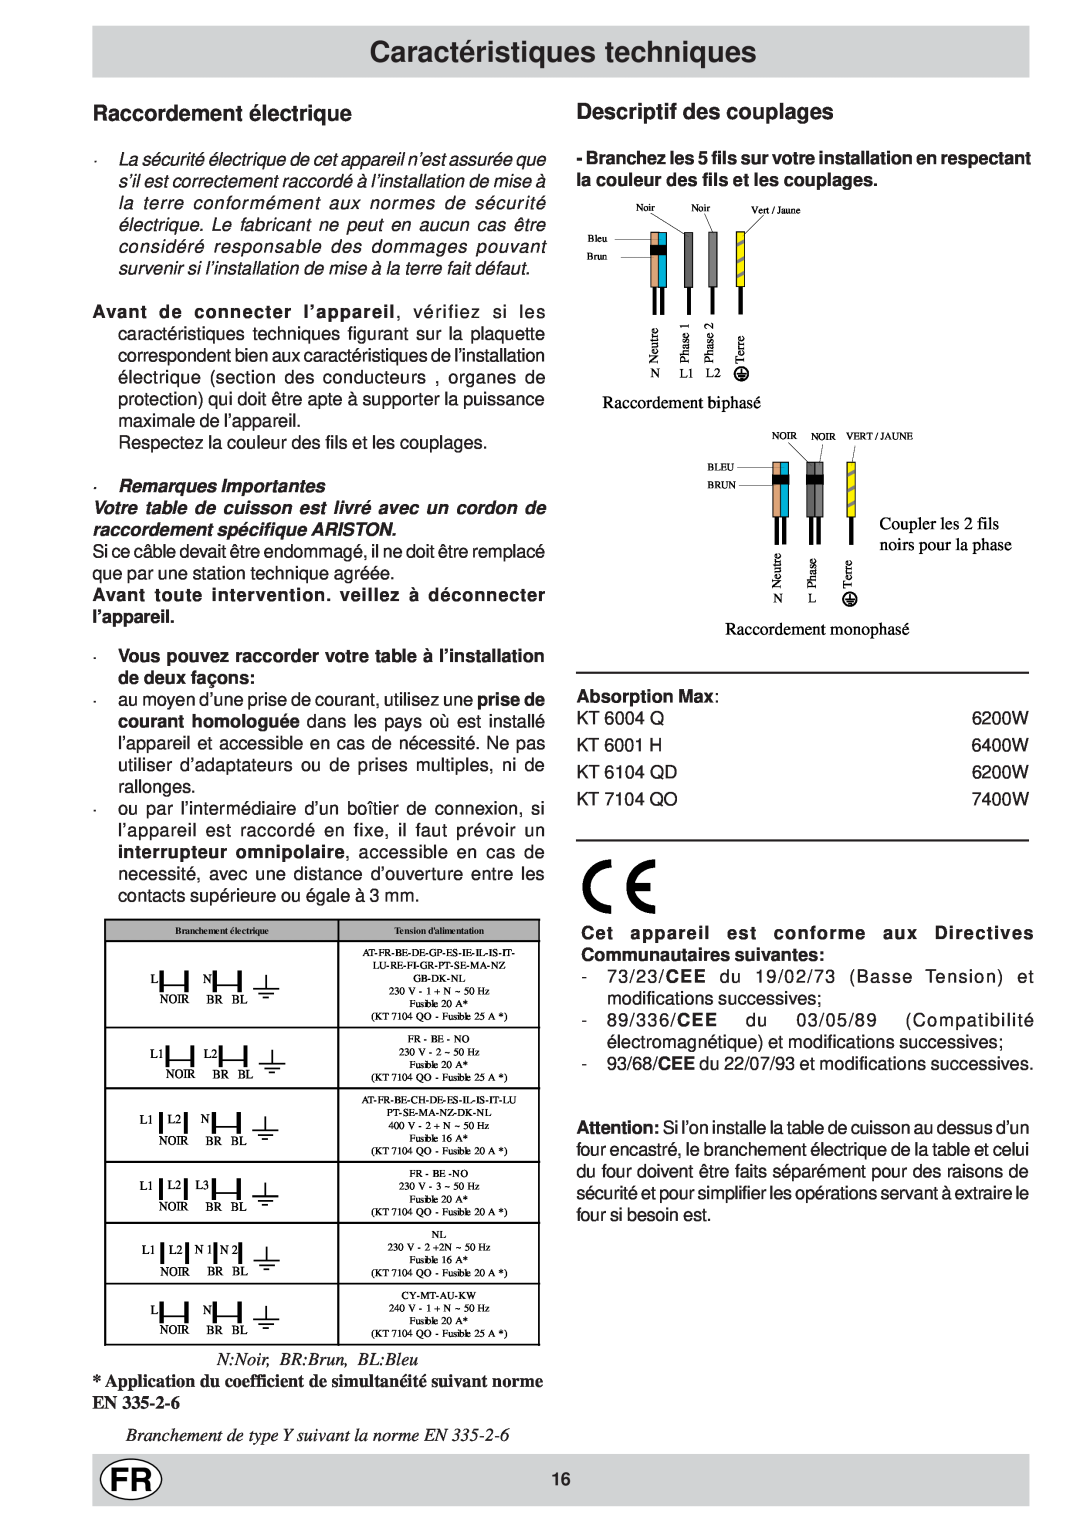 Ariston KT 8104 QO manual Caractéristiques techniques, Raccordement électrique, Descriptif des couplages, Absorption Max 